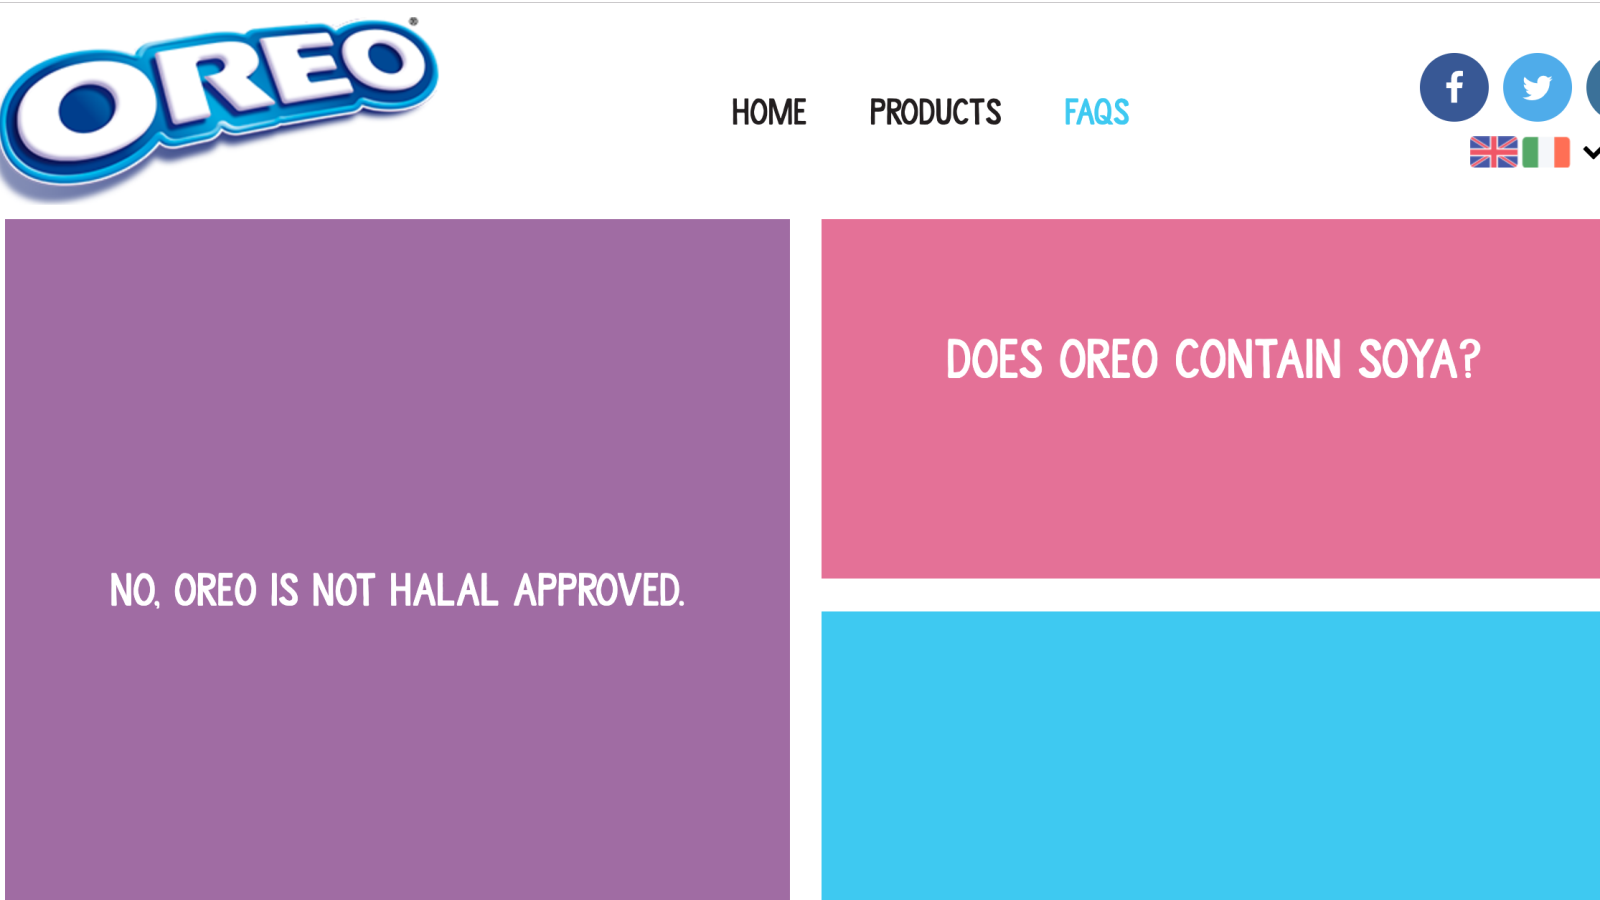 ‪الموقع الرسمي لأوريو يجيبك: منتجنا ليس حلالا‬ (مواقع التواصل الاجتماعي)